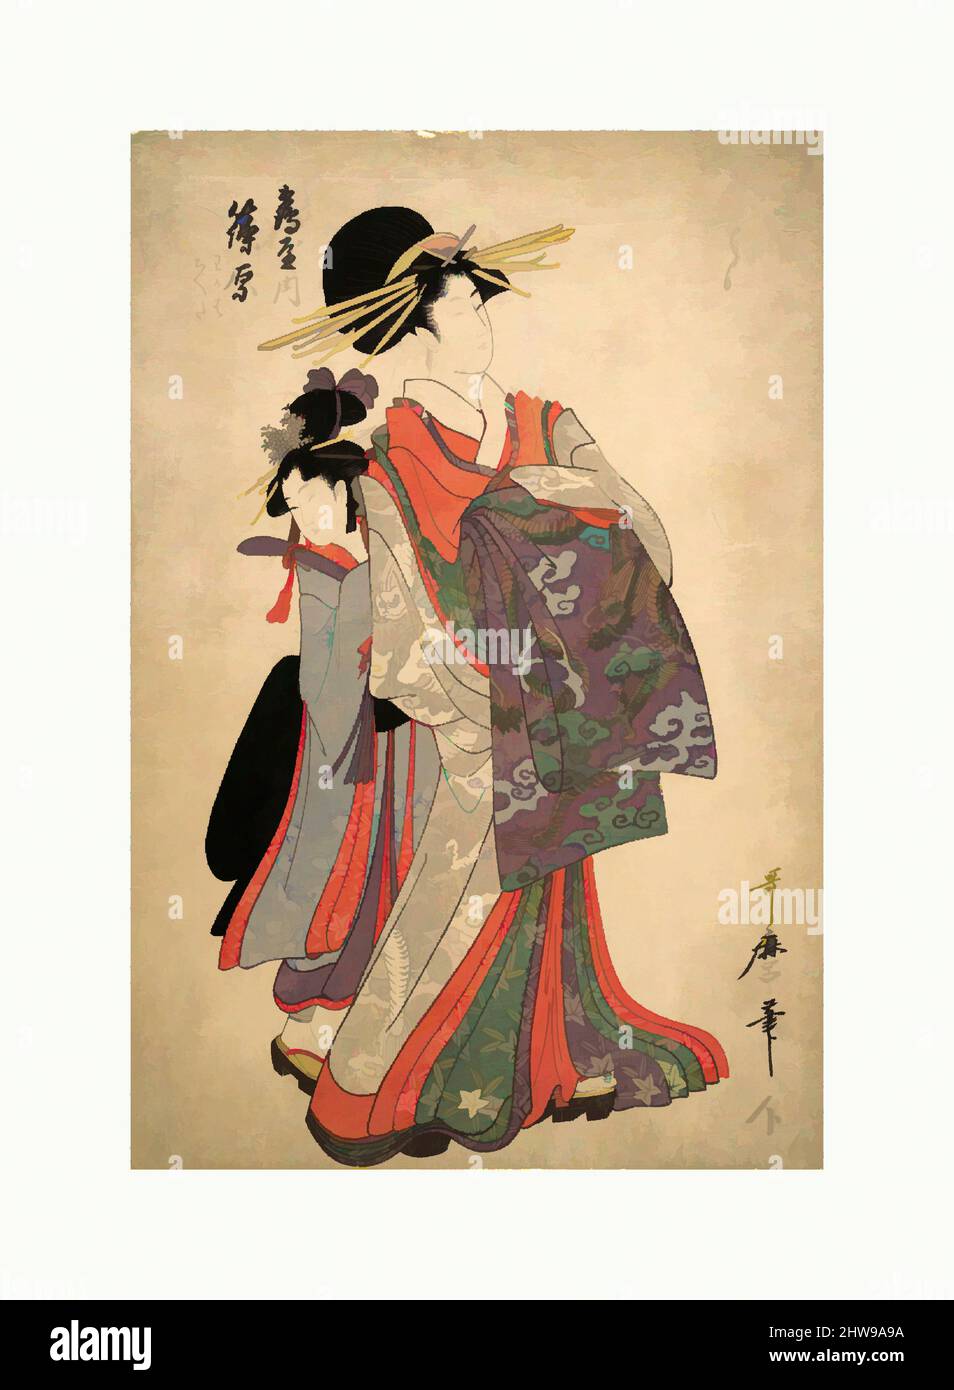 Art inspiré par courtesan, Shinohara et Kamuro de Tsuruya, époque Edo (1615–1868), fin du 18th siècle, Japon, imprimé en polychrome sur bois; Encre et couleur sur papier, image : 15 1/8 × 10 1/8 po. (38,4 × 25,7 cm), estampes, Kitagawa Utamaro (japonais, 1753?–1806, œuvres classiques modernisées par Artotop avec une touche de modernité. Formes, couleur et valeur, impact visuel accrocheur sur l'art émotions par la liberté d'œuvres d'art d'une manière contemporaine. Un message intemporel qui cherche une nouvelle direction créative. Artistes qui se tournent vers le support numérique et créent le NFT Artotop Banque D'Images